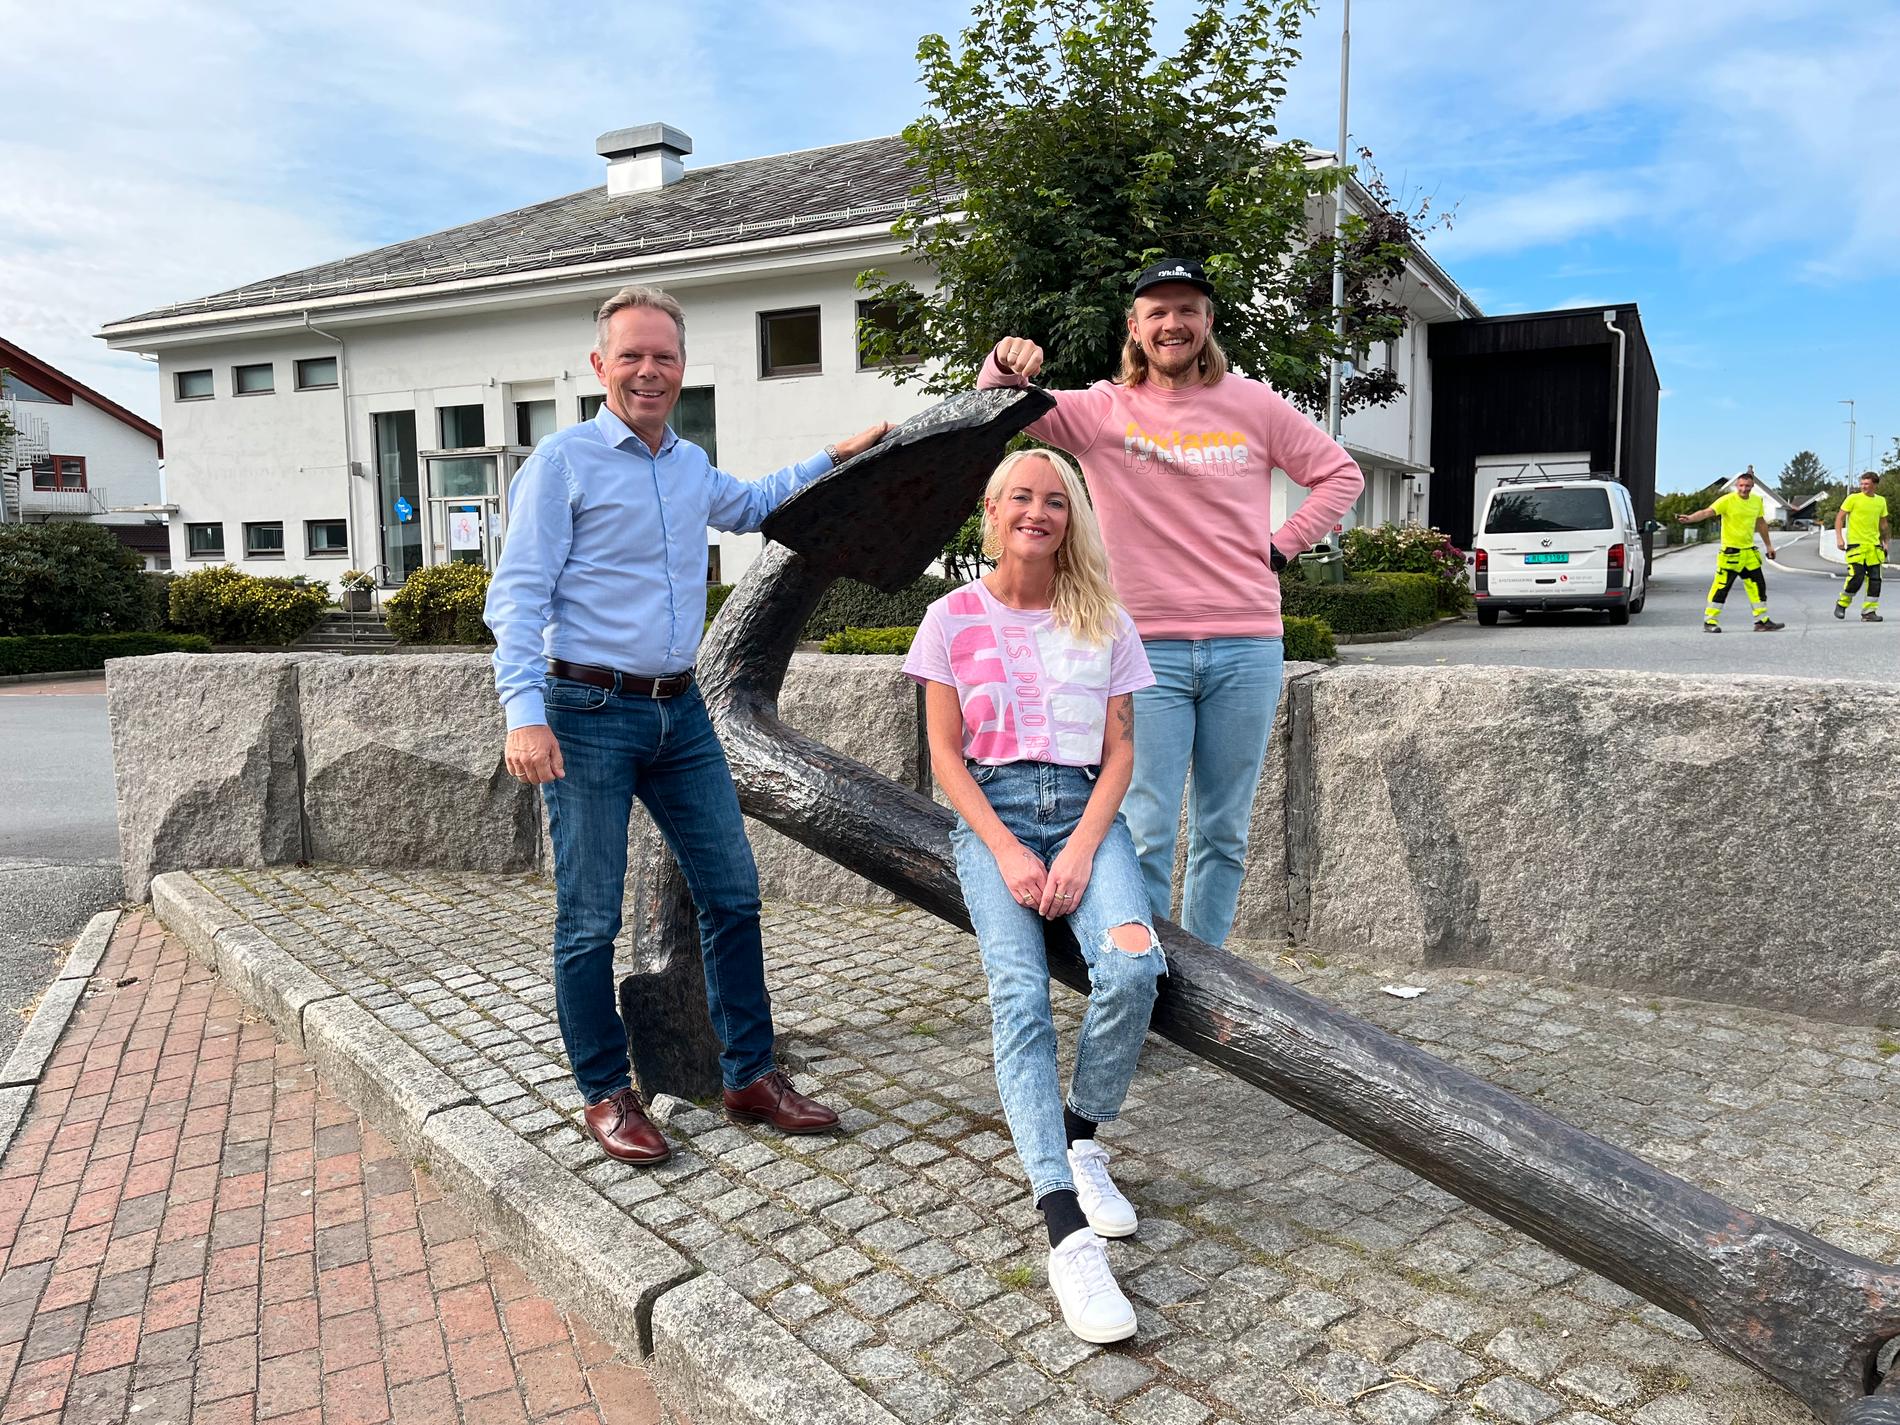 Frå venstre: Jan Sverre Grimstad, Tina Nådland og Tom Egill Tobiassen. Denne gjengen vil gjerne ha deg med på nettverksbygging i øyriket. 